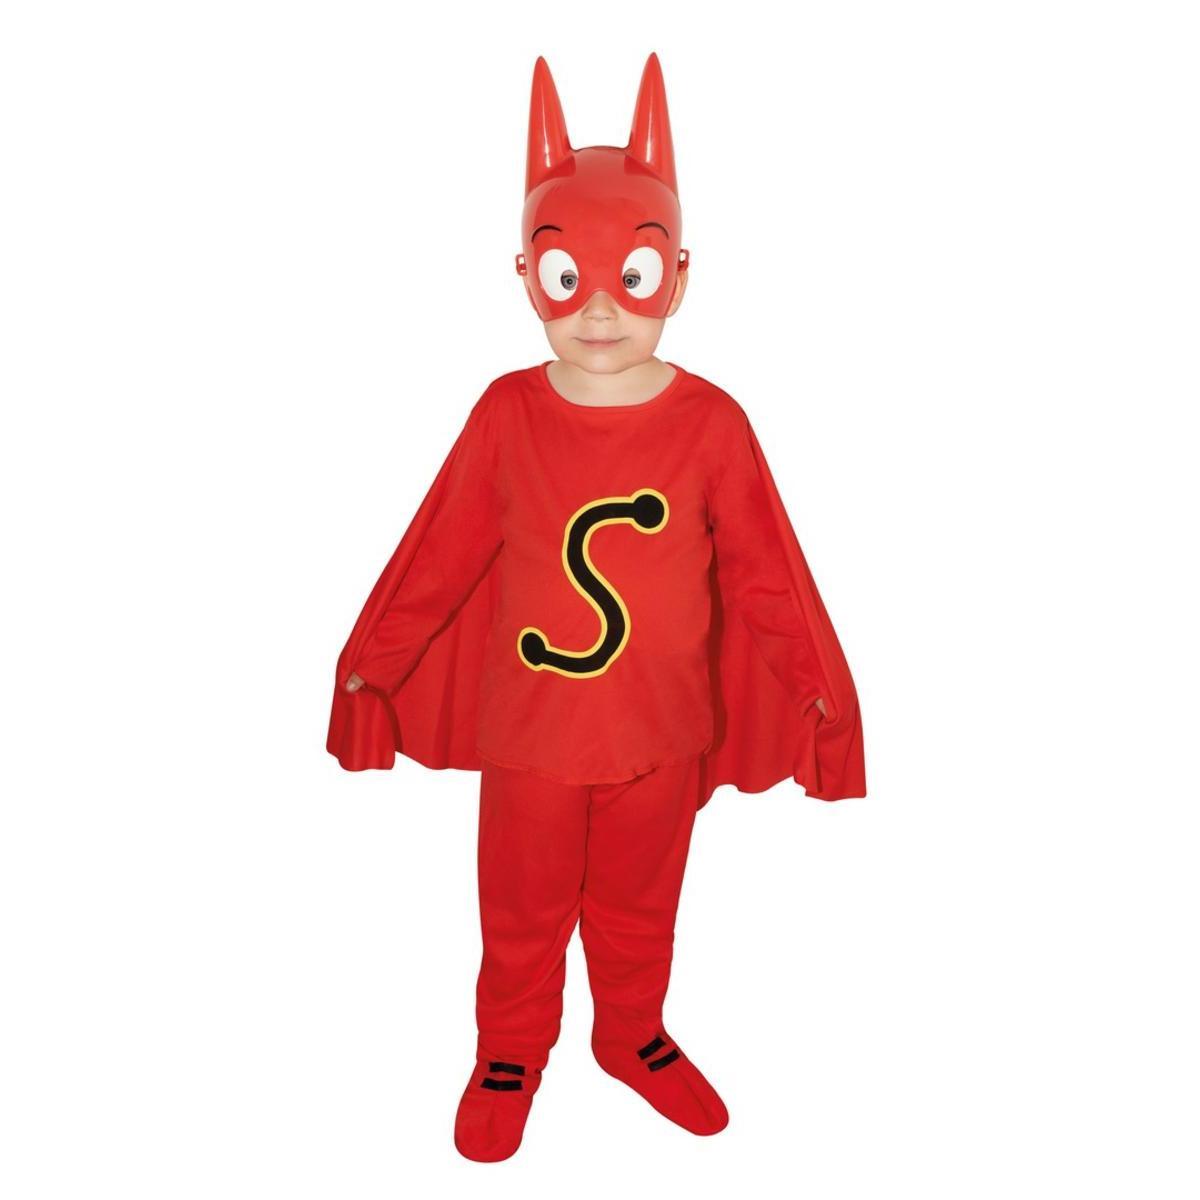 Costume SamSam - Différentes tailles - Taille enfant (3/4 ans) - L 39 x H 9 x l 29.5 cm - Rouge - PTIT CLOWN